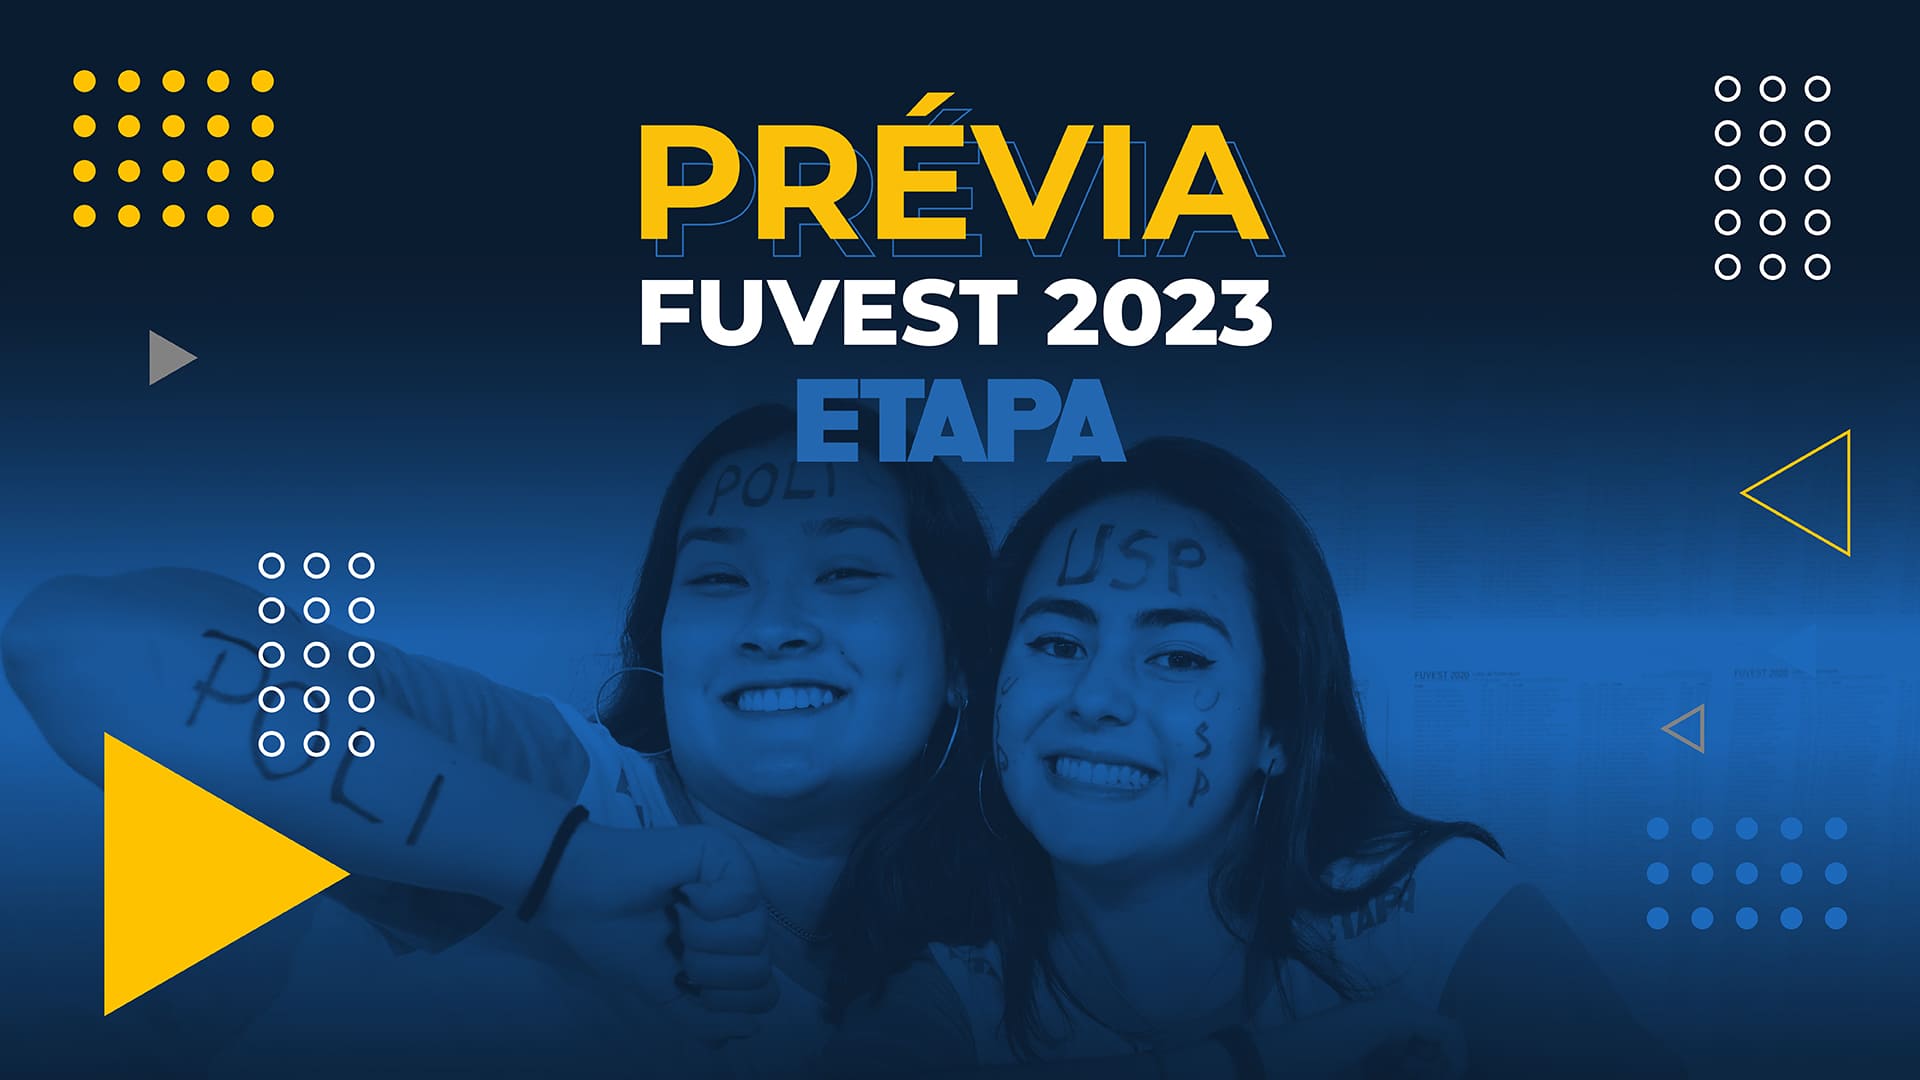 A Prévia Fuvest 2023 é uma pesquisa criada pelo Curso Etapa para antever as notas de corte da Fuvest.